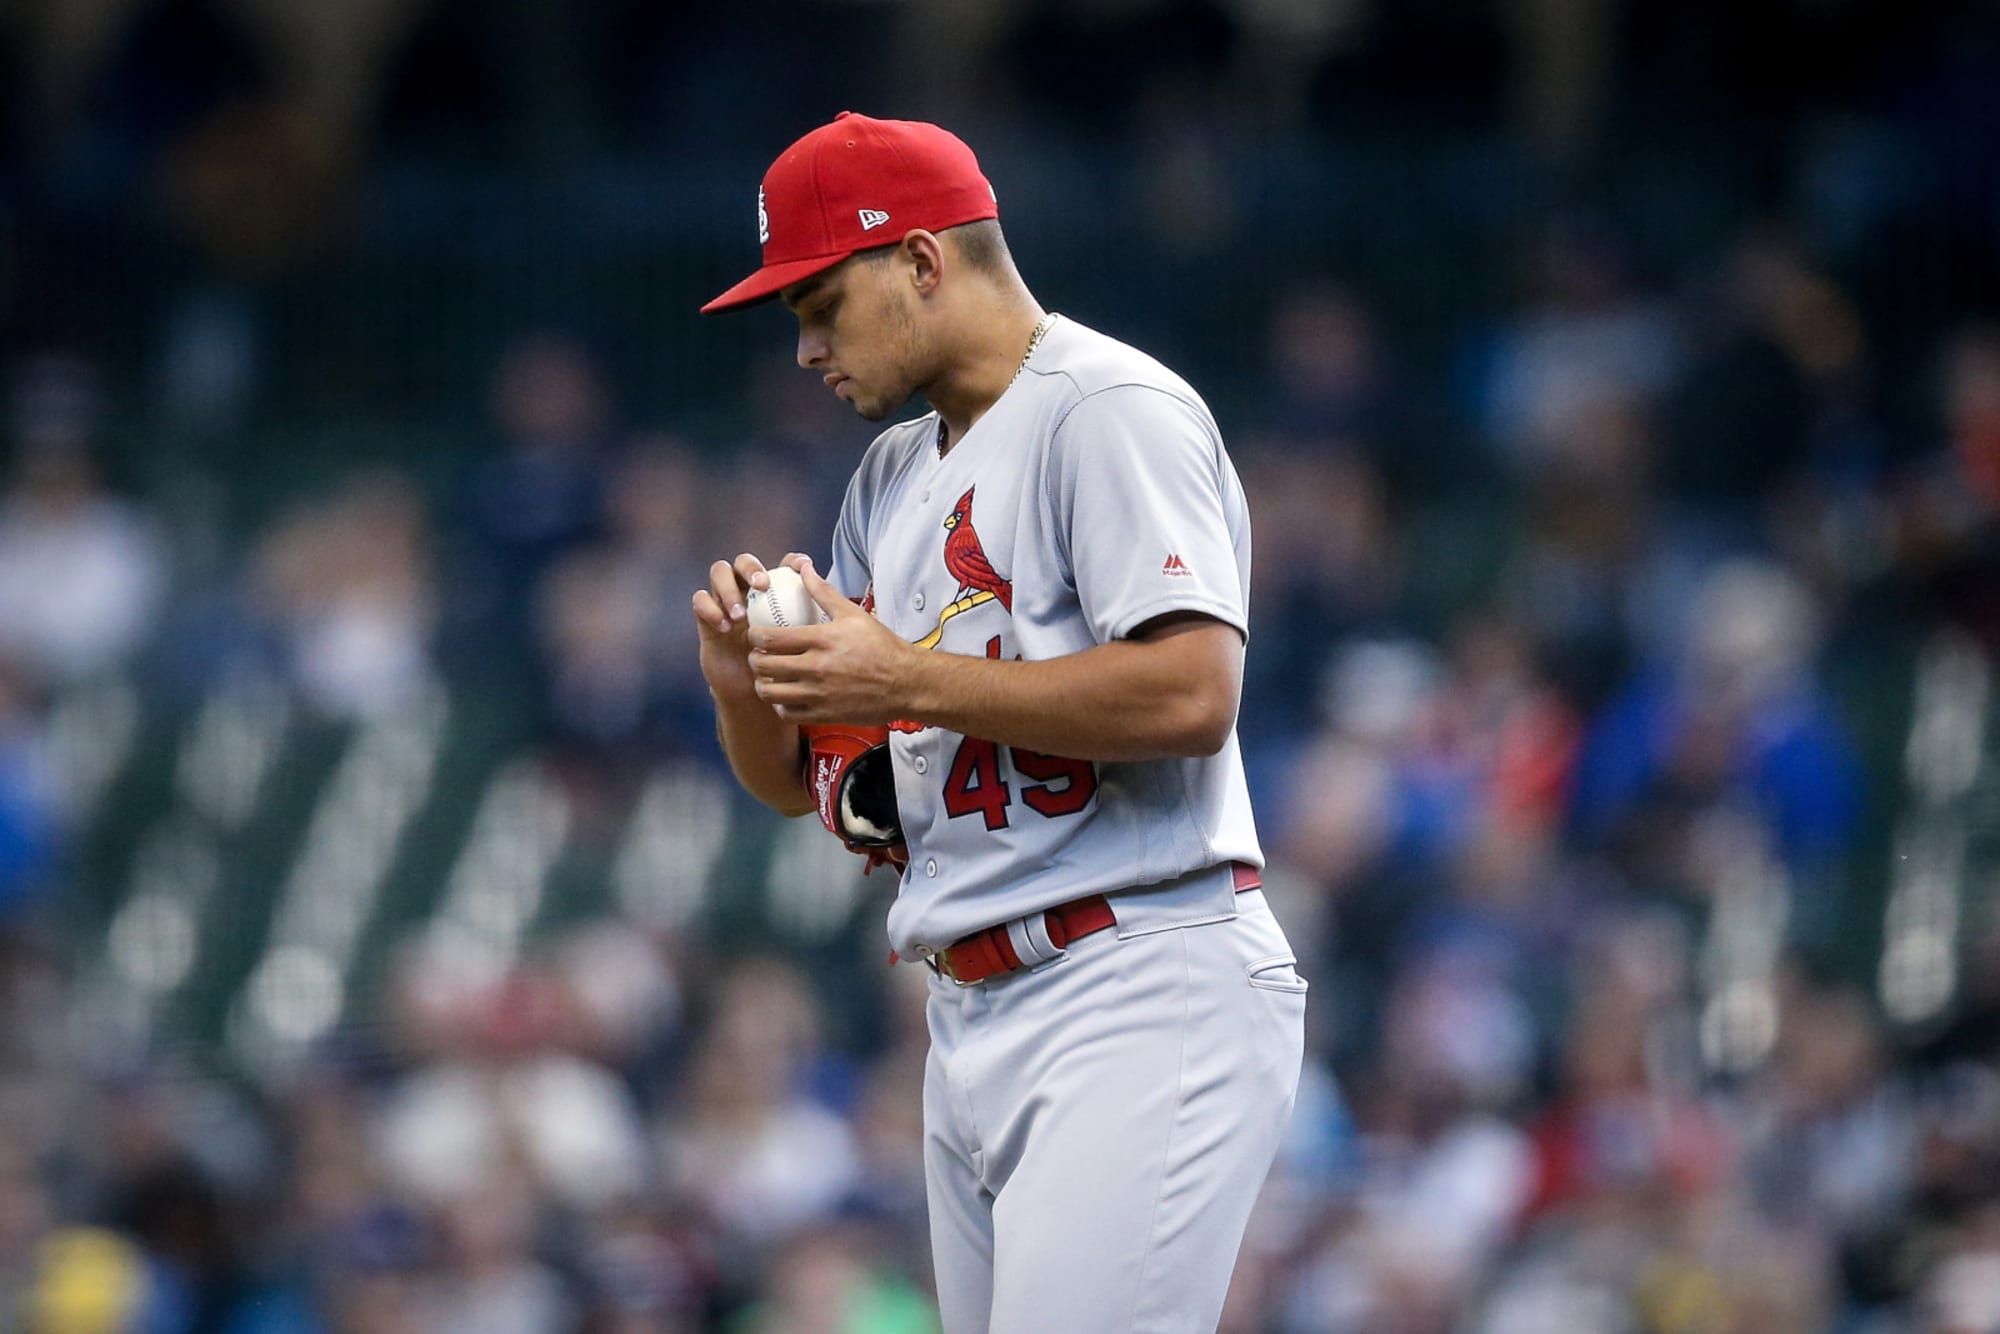 St. Louis Cardinals pitcher Jordan Hicks opts out of 2020 season